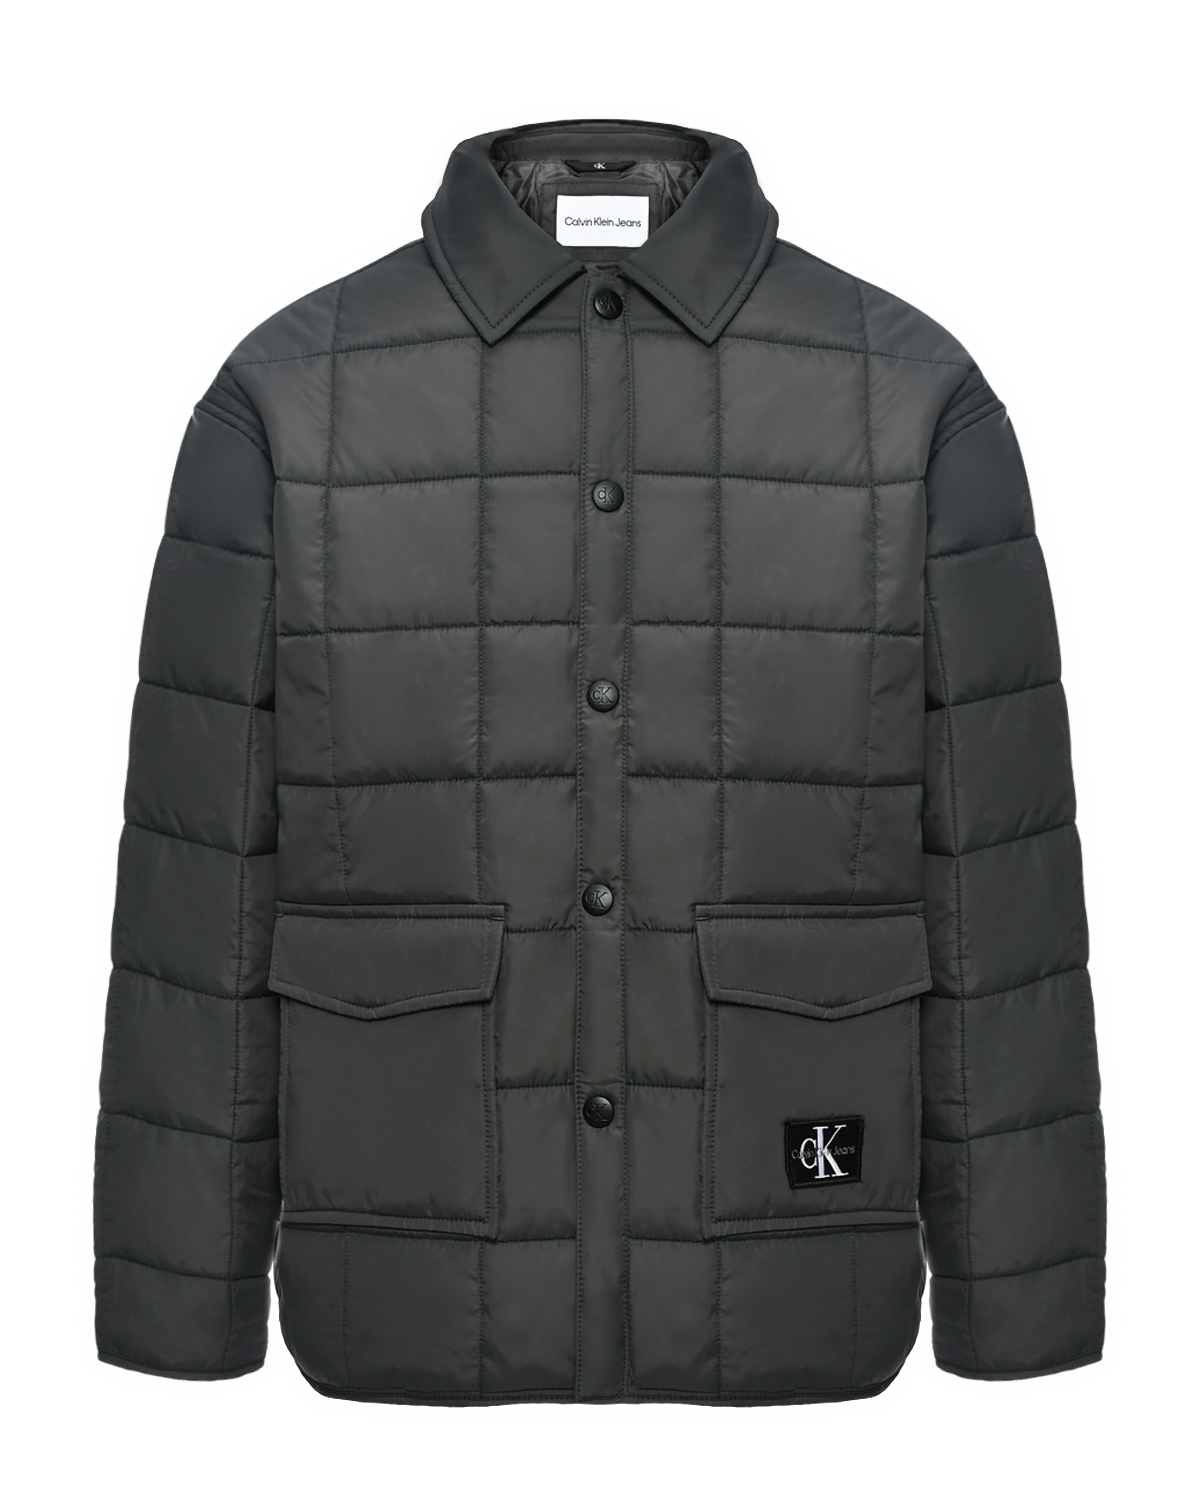 Стеганая куртка с накладными карманами Calvin Klein, размер 164, цвет серый - фото 1